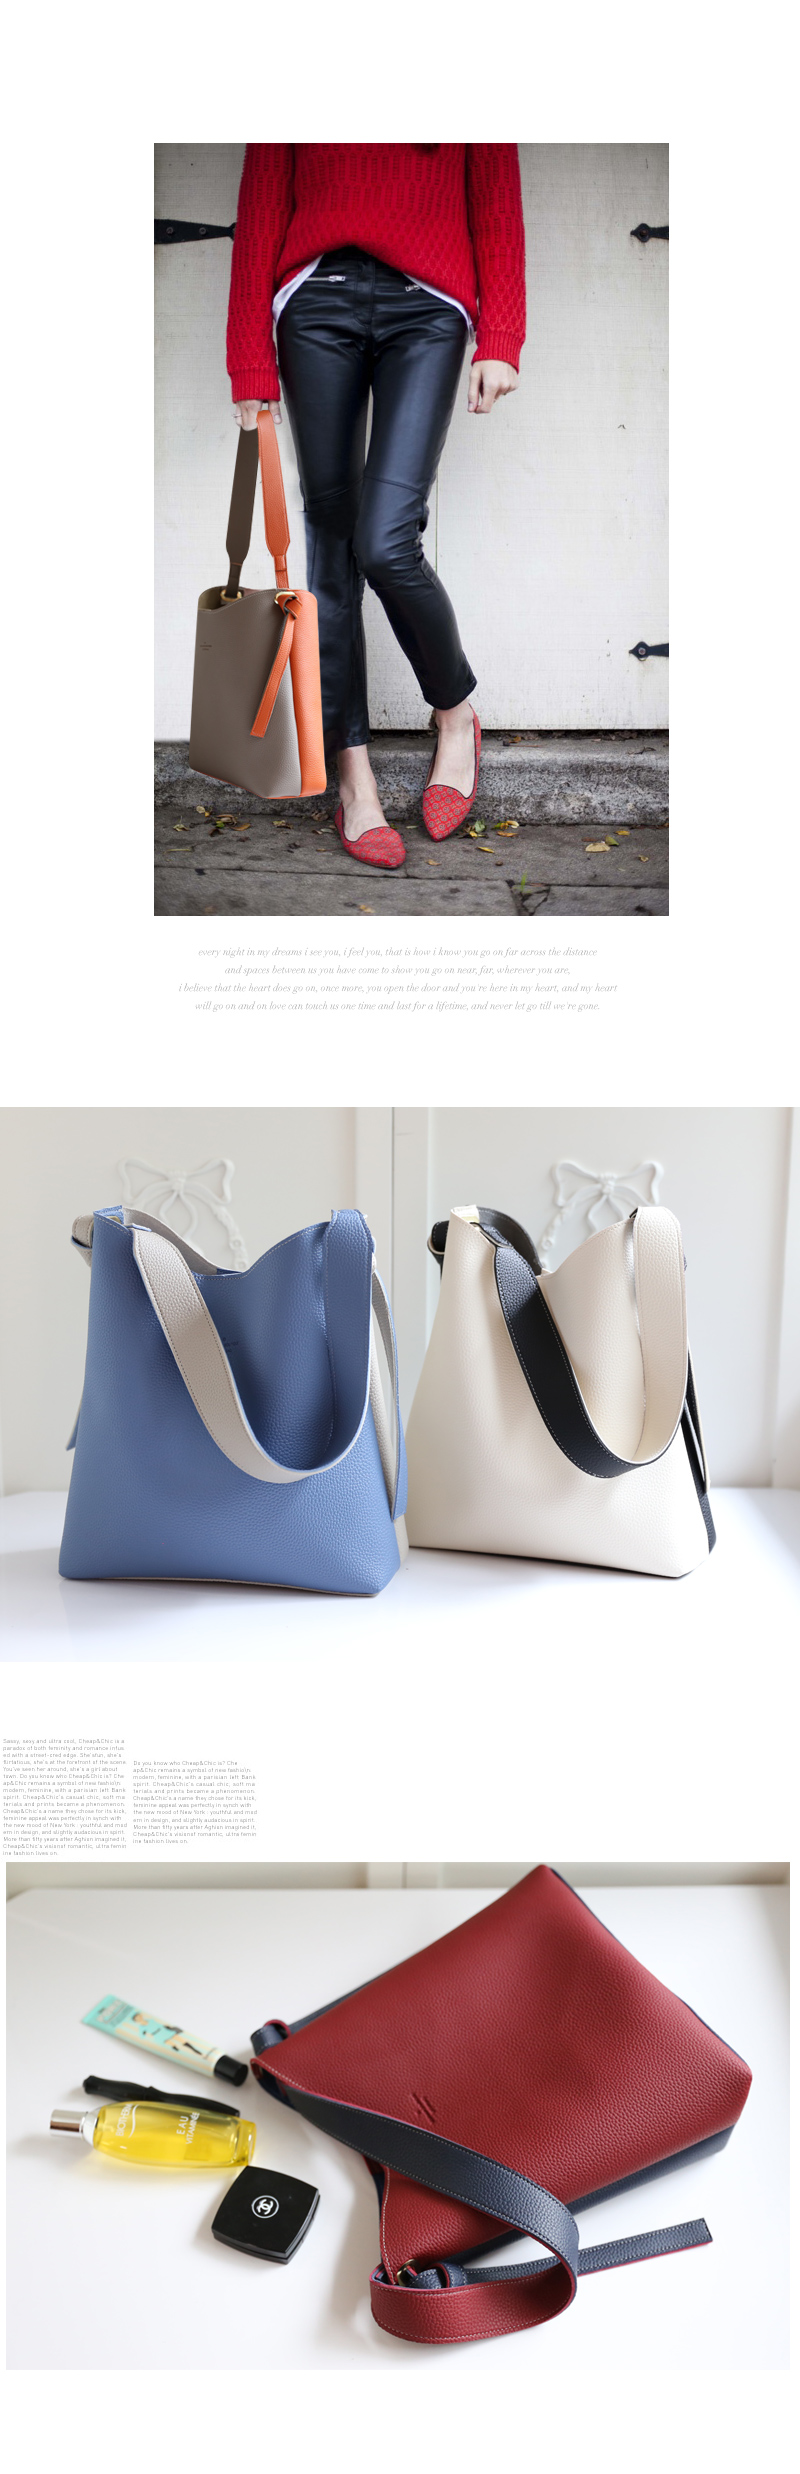  [STORYBAG] กระเป๋าสะพายข้างขนาดกลางที่ผลิตในเกาหลีNO.2030